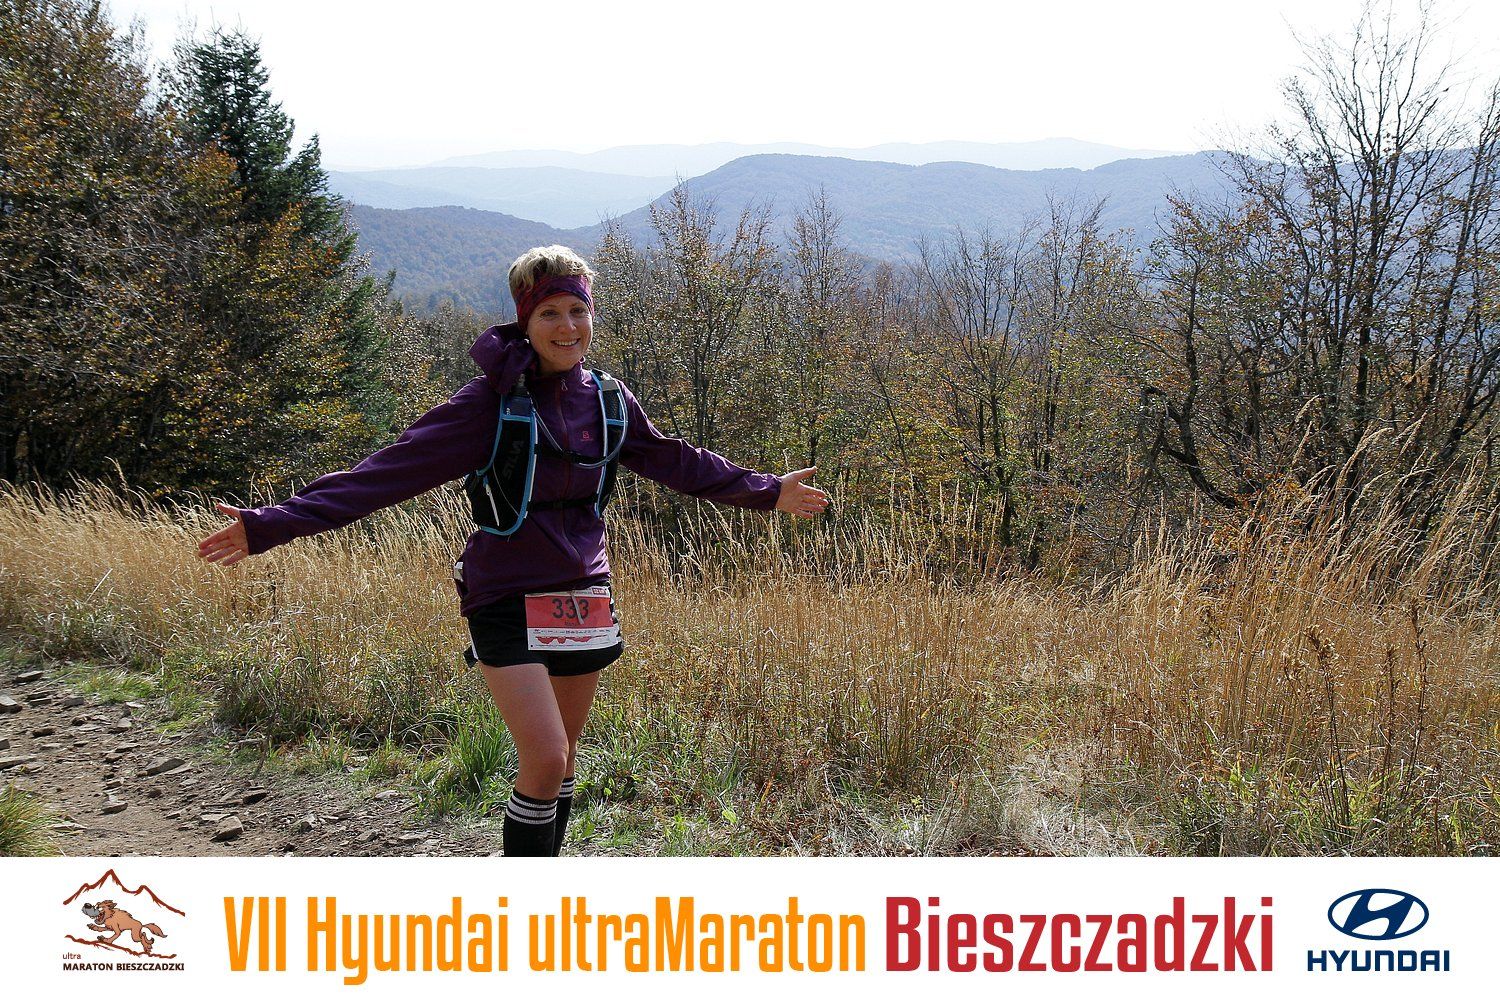 Relacja z VII Hyundai Ultramaraton Bieszczadzki, czyli koniec mojego ultra sezonu 2019.